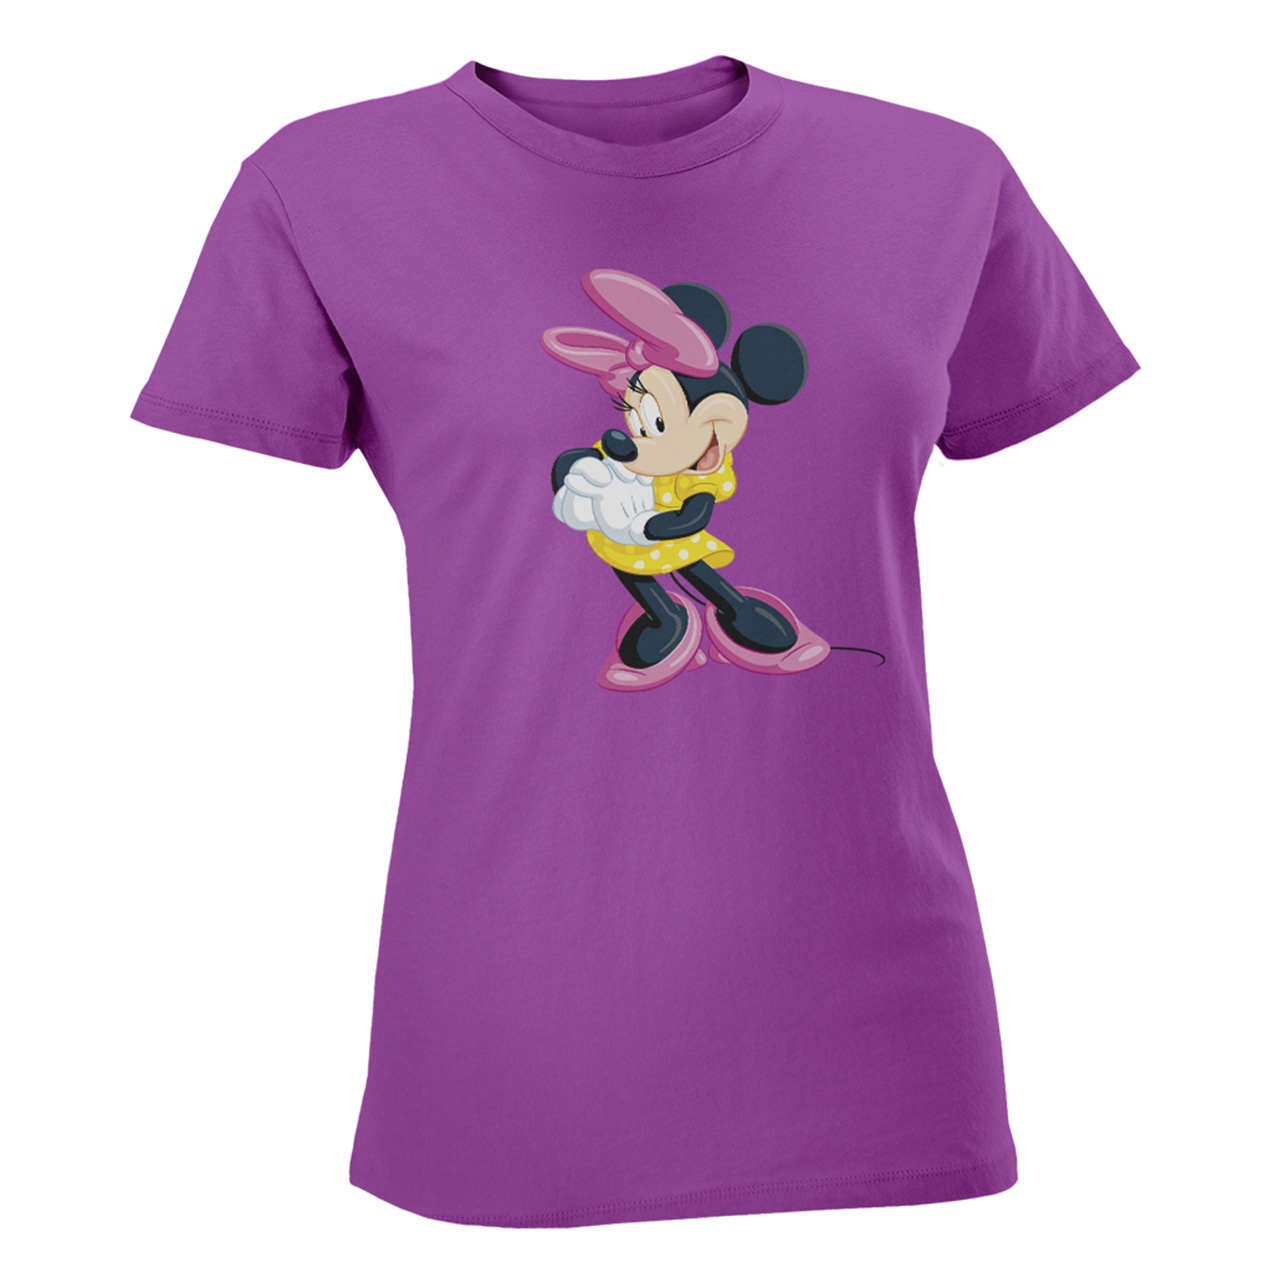 تی شرت زنانه مسترمانی مدل mickey mouse کد 1163